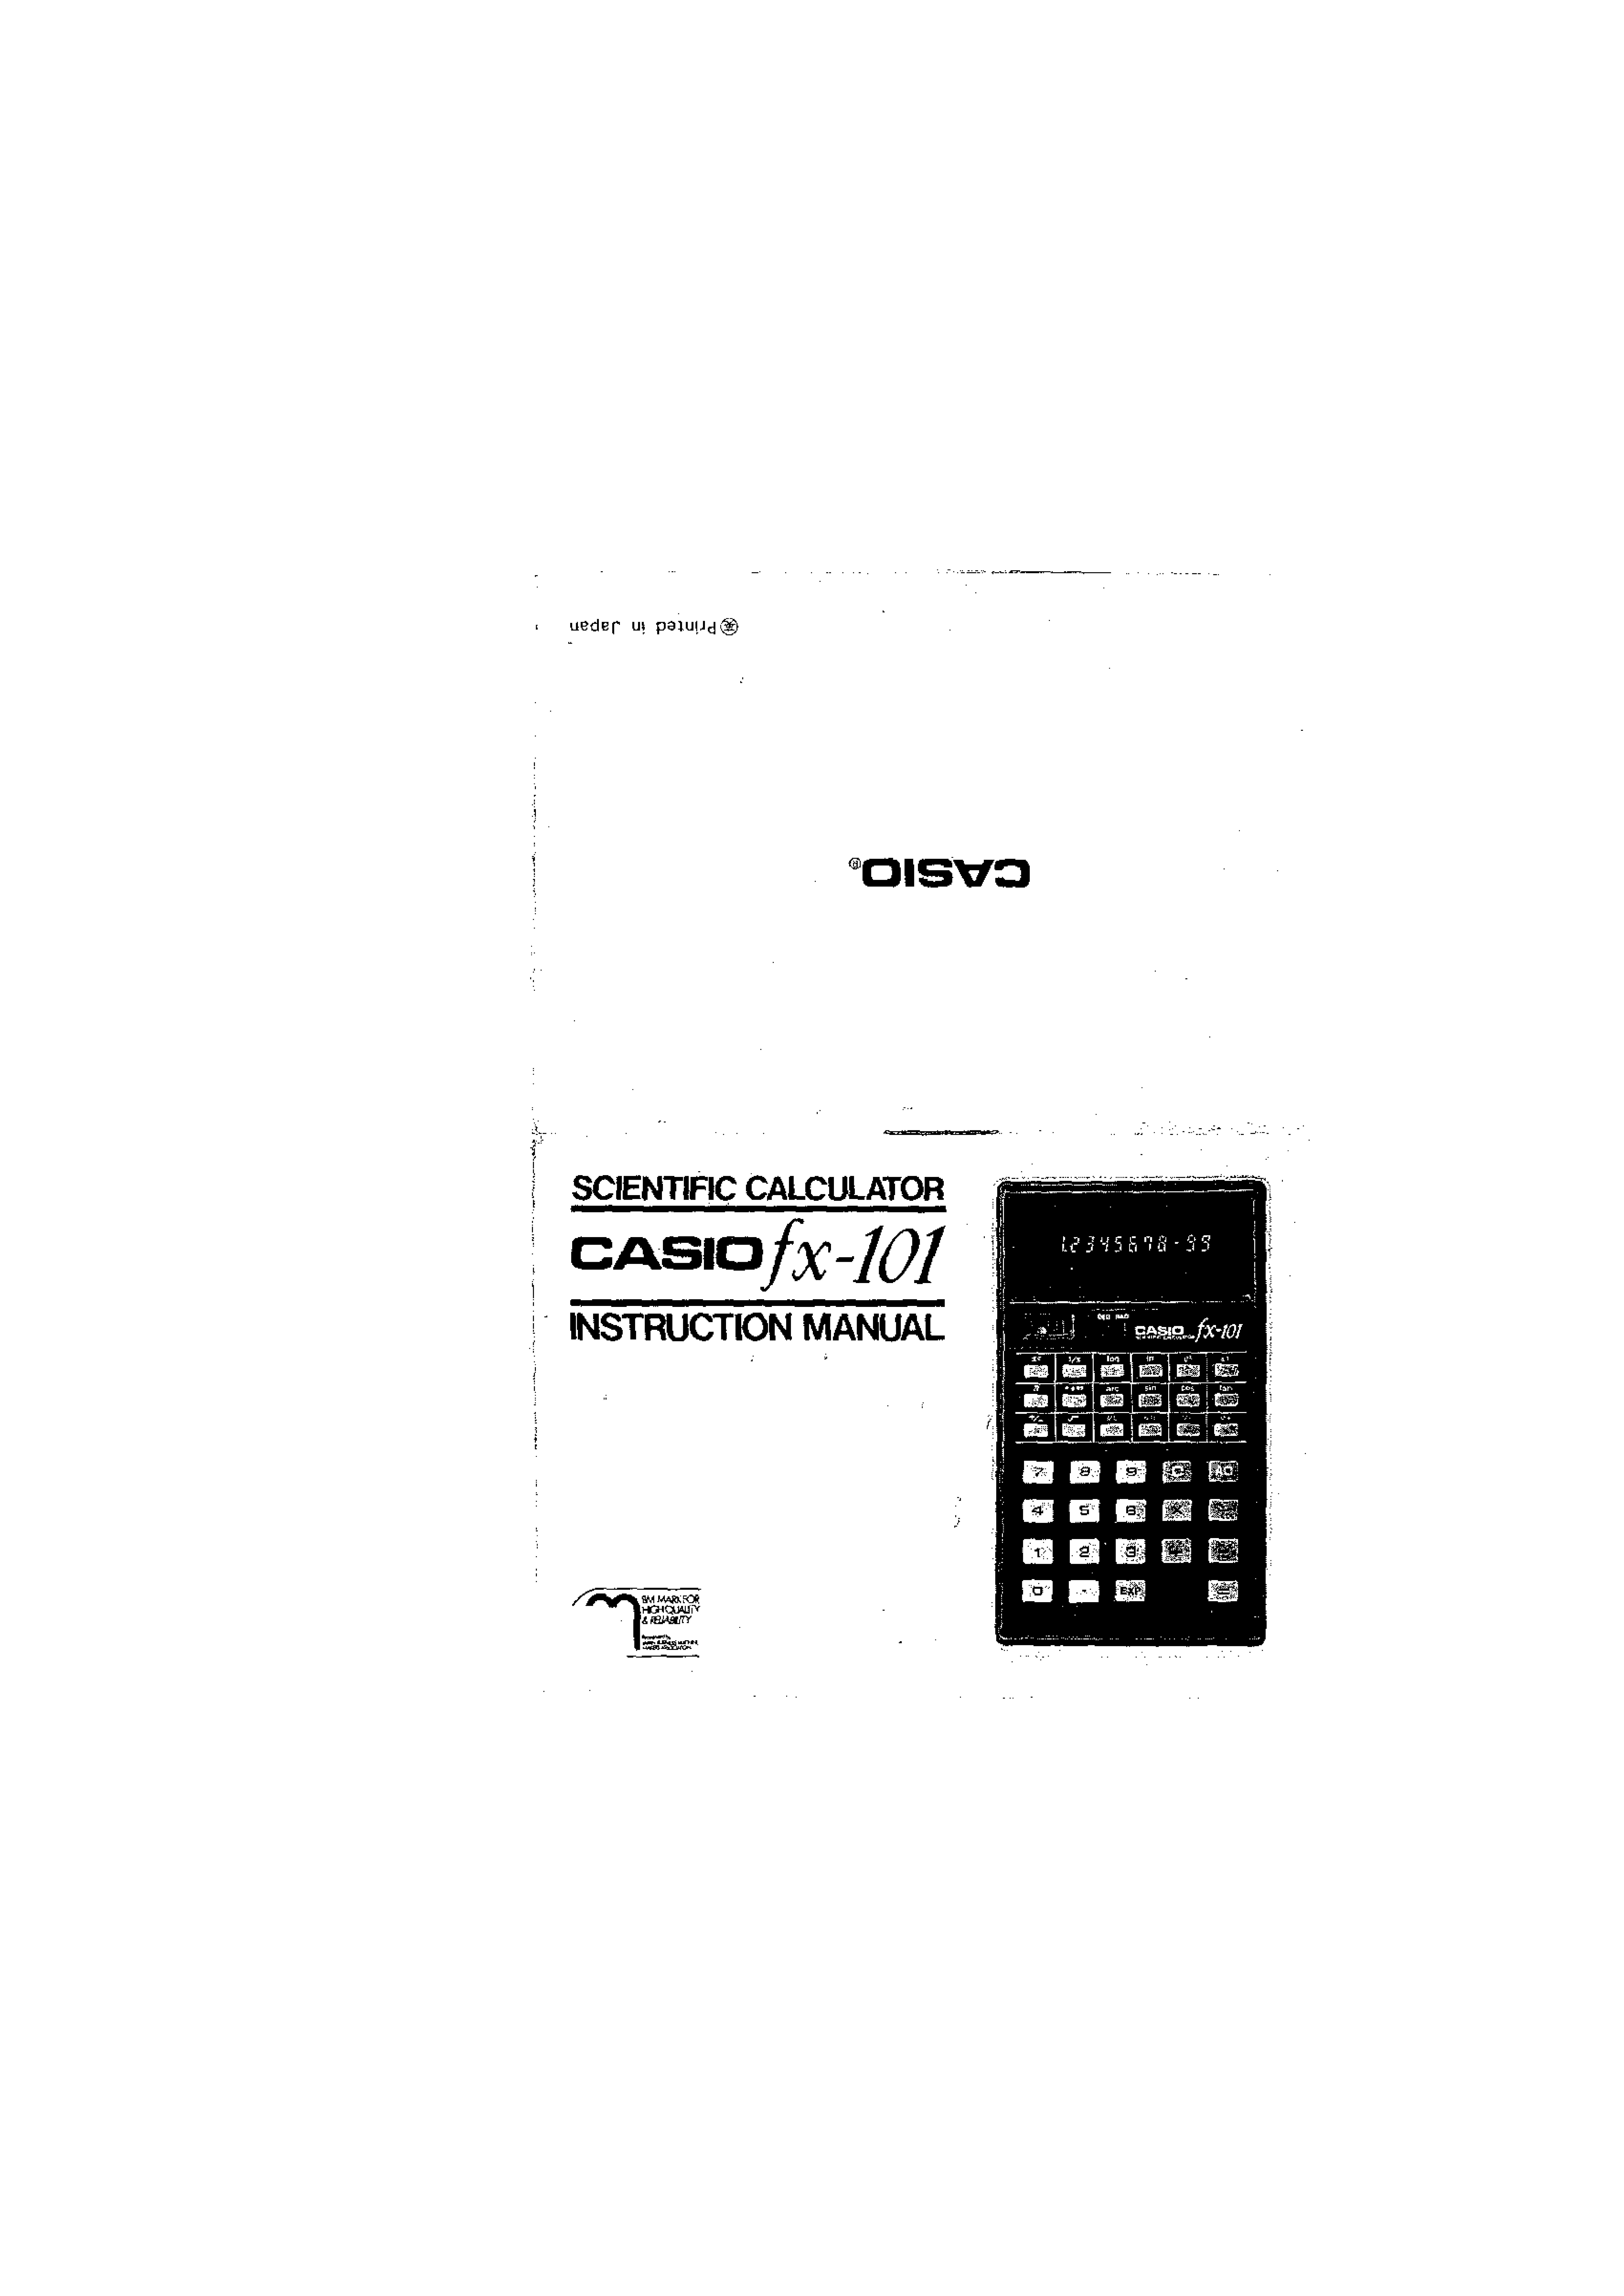 Casio fx-101 Calculator User Manual